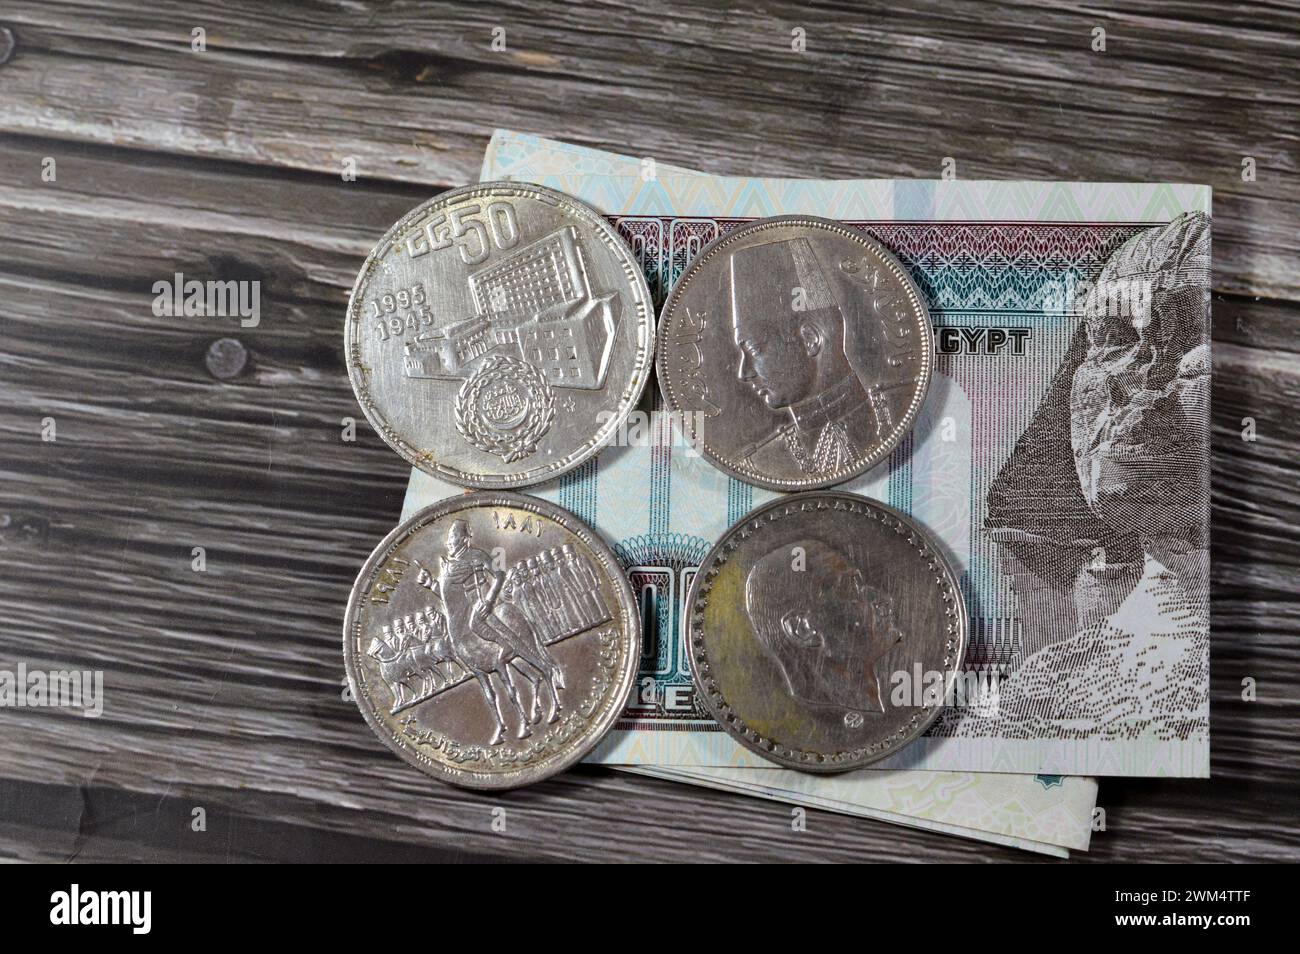 Banconota egiziana con monete d'argento egiziane della rivoluzione Orabi, il presidente Gamal Abdel Nasser, il re Farouk i e il giubileo d'oro della Lega araba, Foto Stock